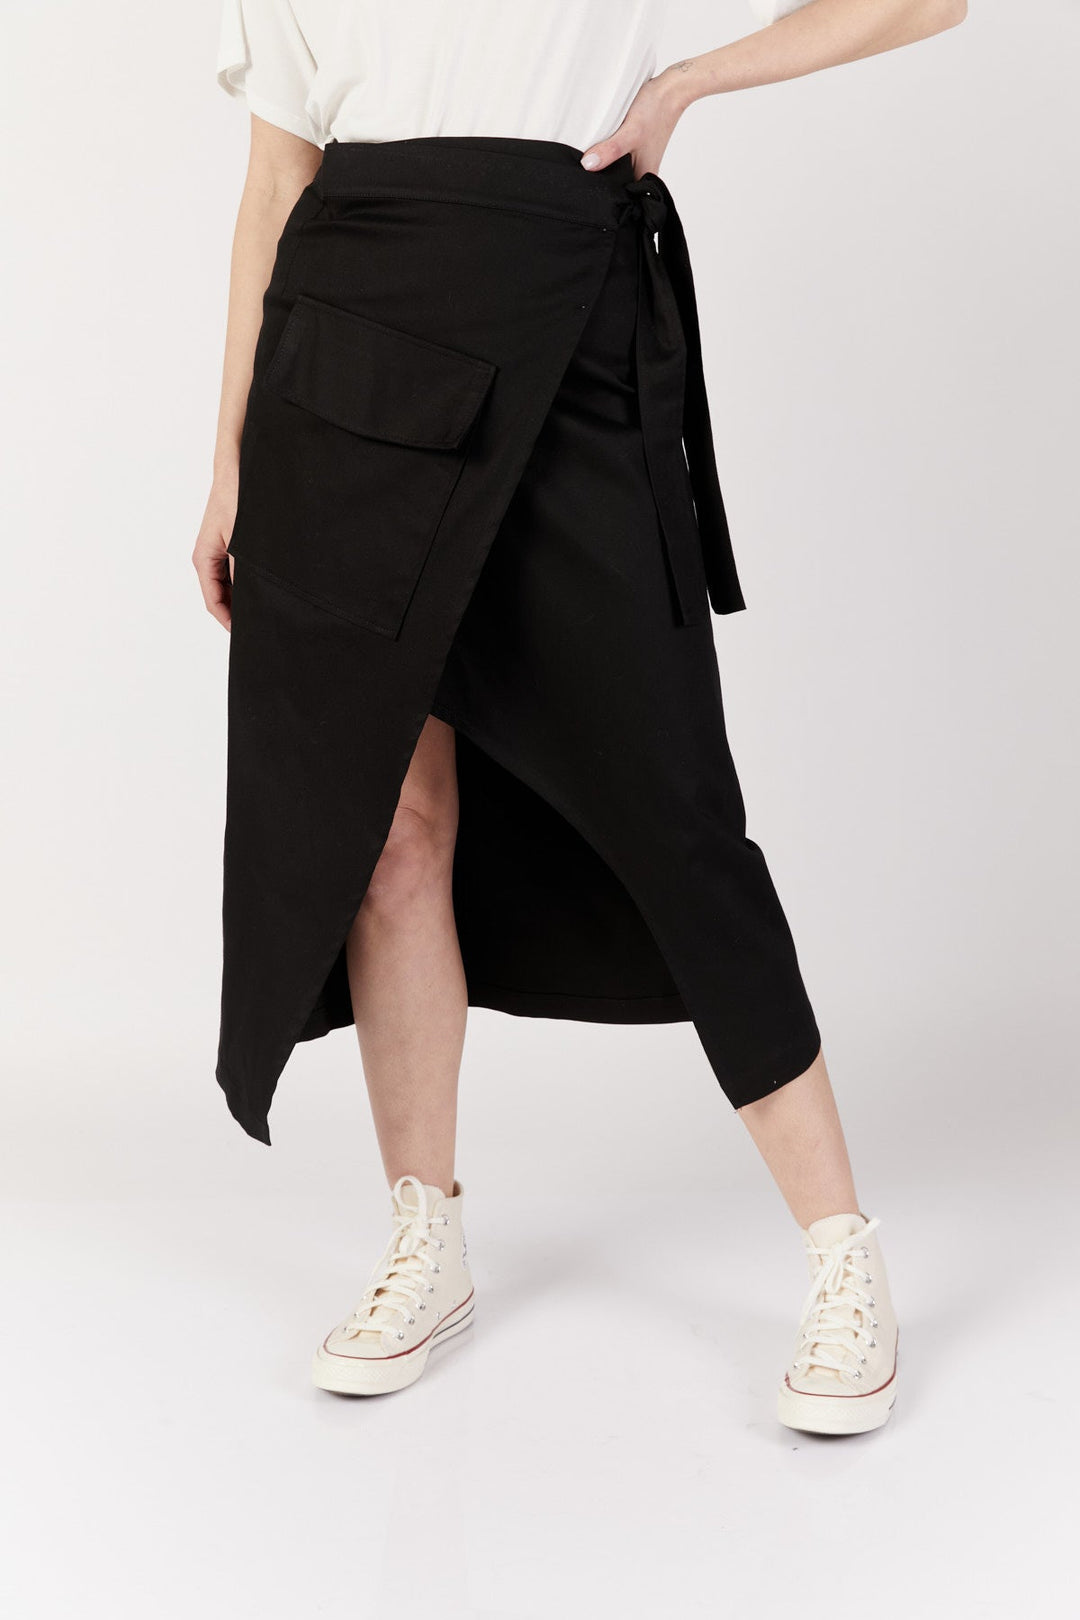 חצאית מעטפת קברנה בצבע שחור - Razili Studio